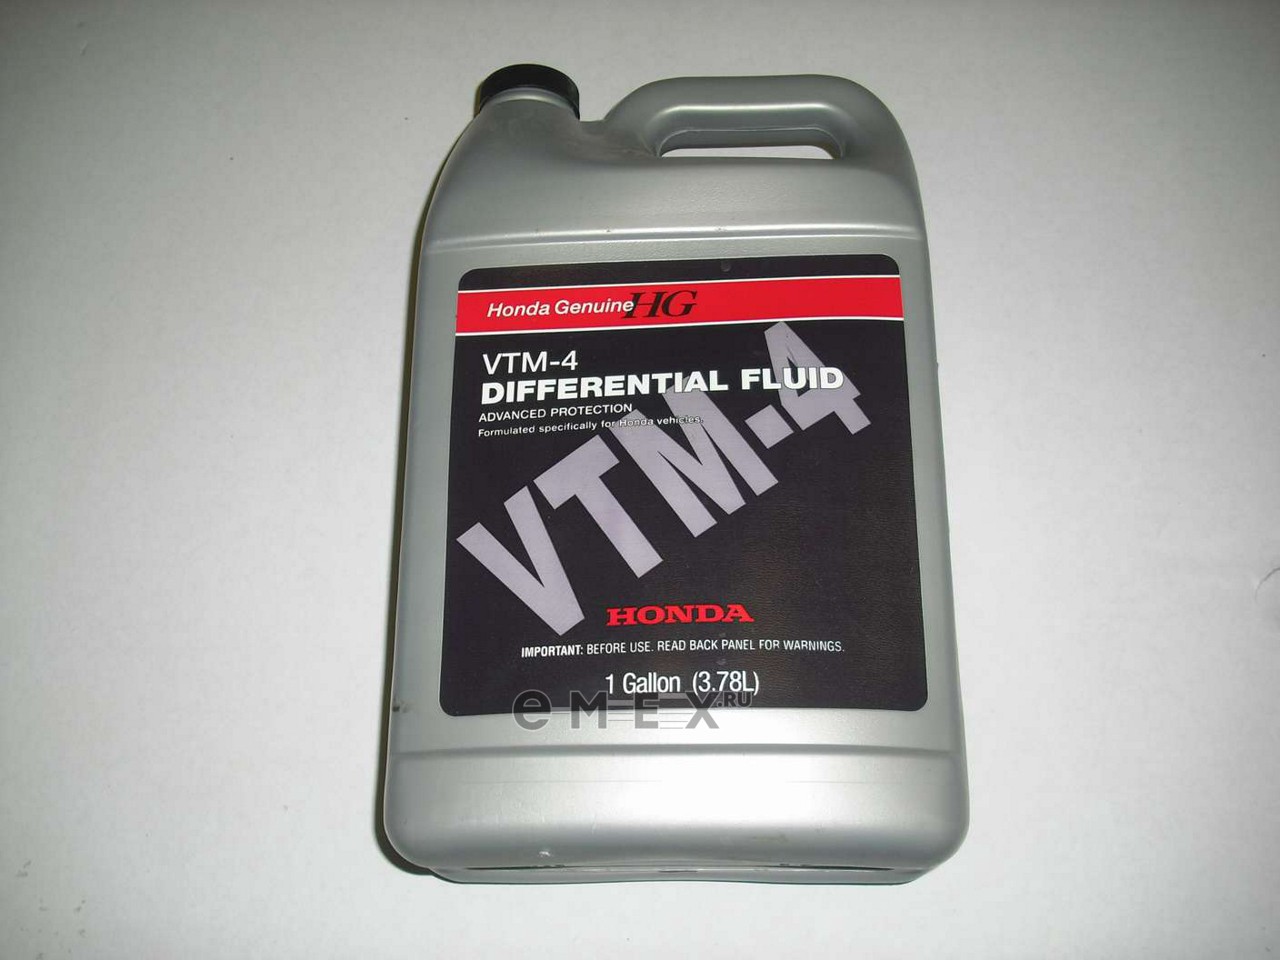 Масло в мост хонда. Honda Ultra VTM-4f. VTM 4 Honda масло. Honda VTM-4 Differential Fluid. Масло трансмиссионное Honda VTM-4 4 Л 08200-9003he.